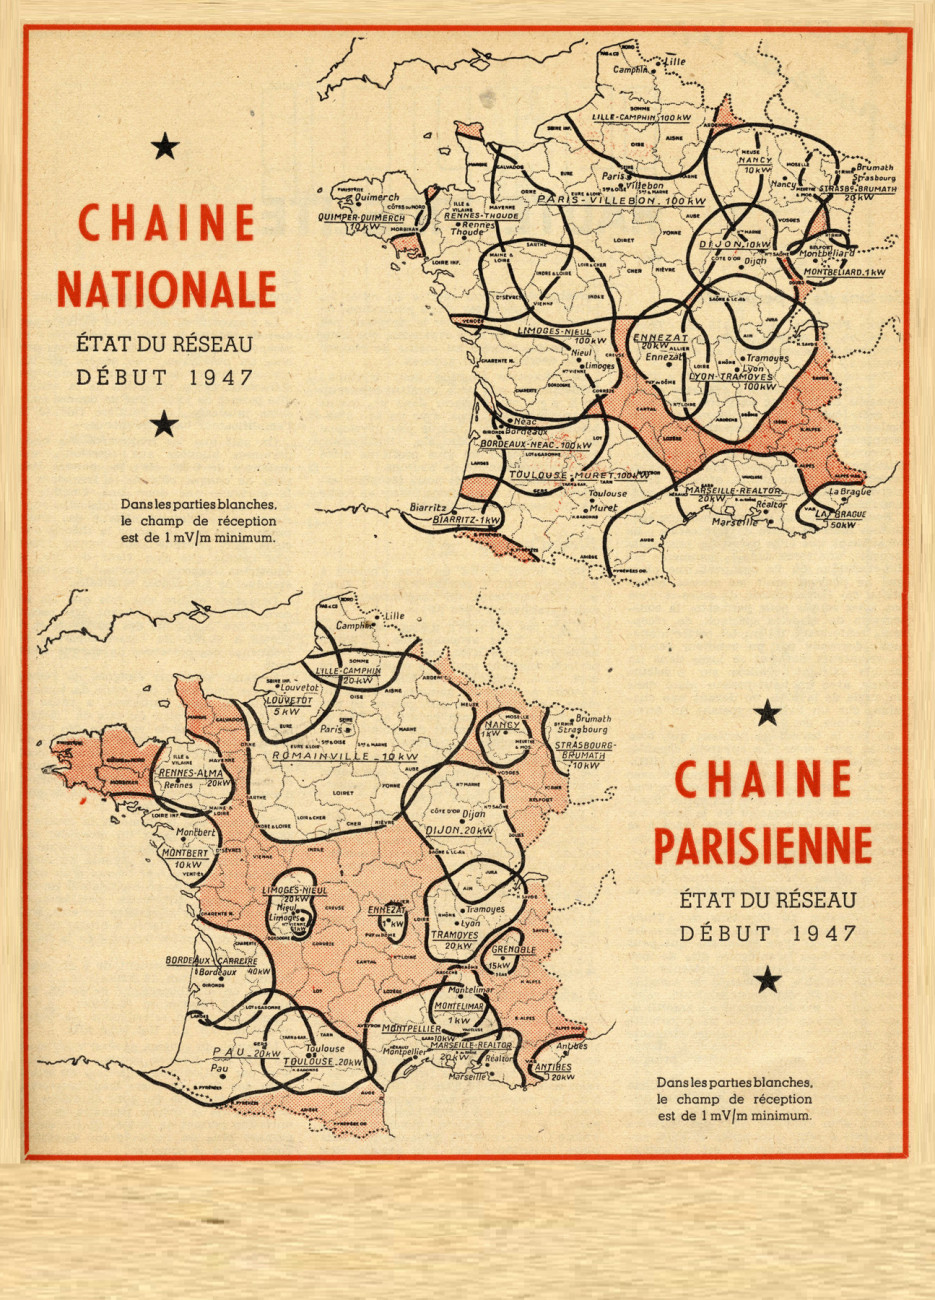 Etat du réseau début 1947 pour le Programme national et le Programme parisien. Extrait du n°115 de la revue Toute la Radio, 1947